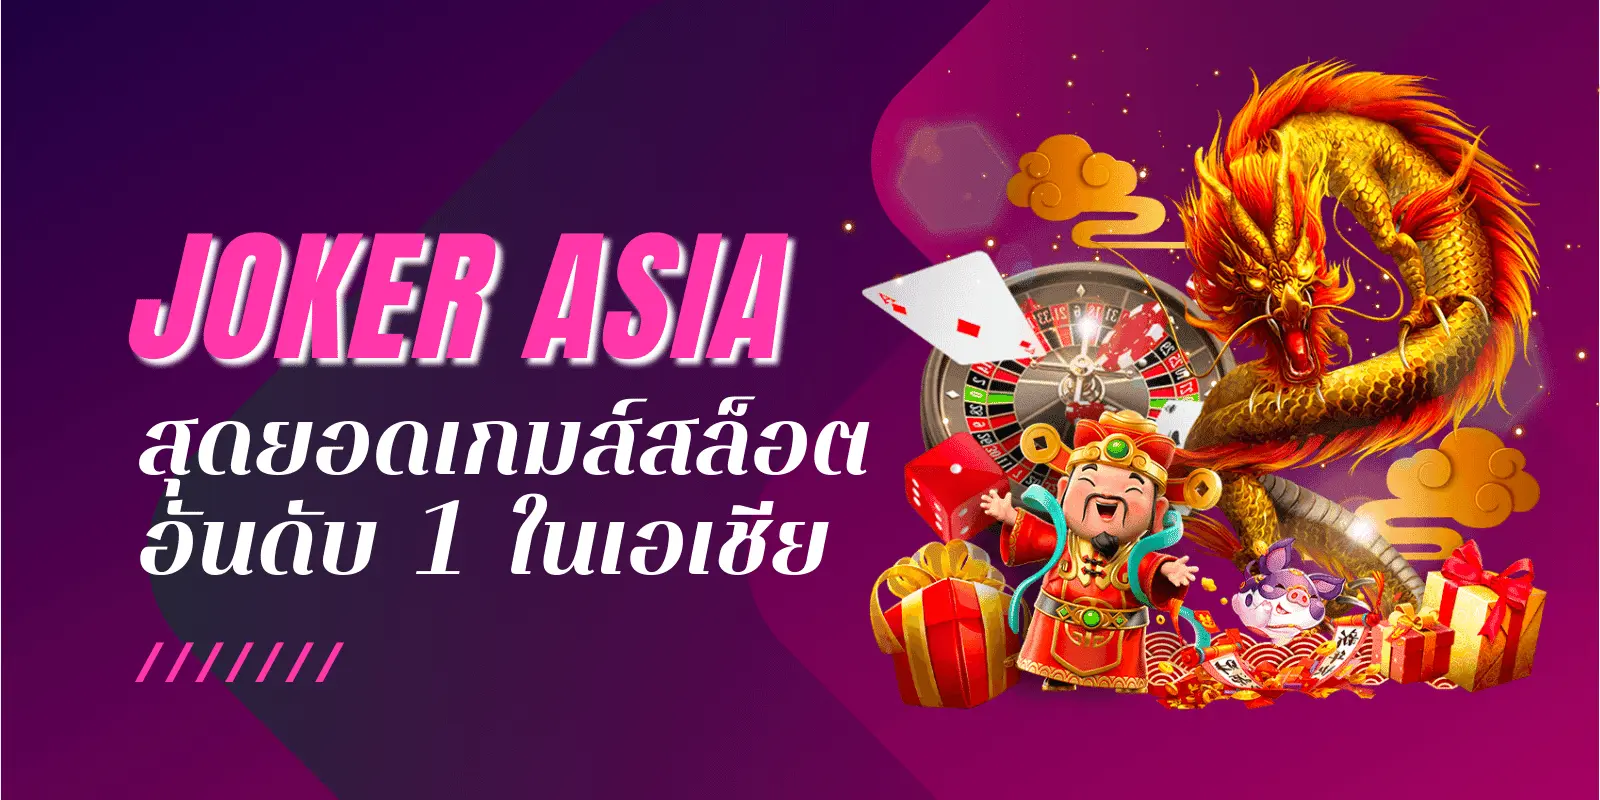 joker asia สุดยอดเกมส์สล็อตอันดับ1ในเอเชีย